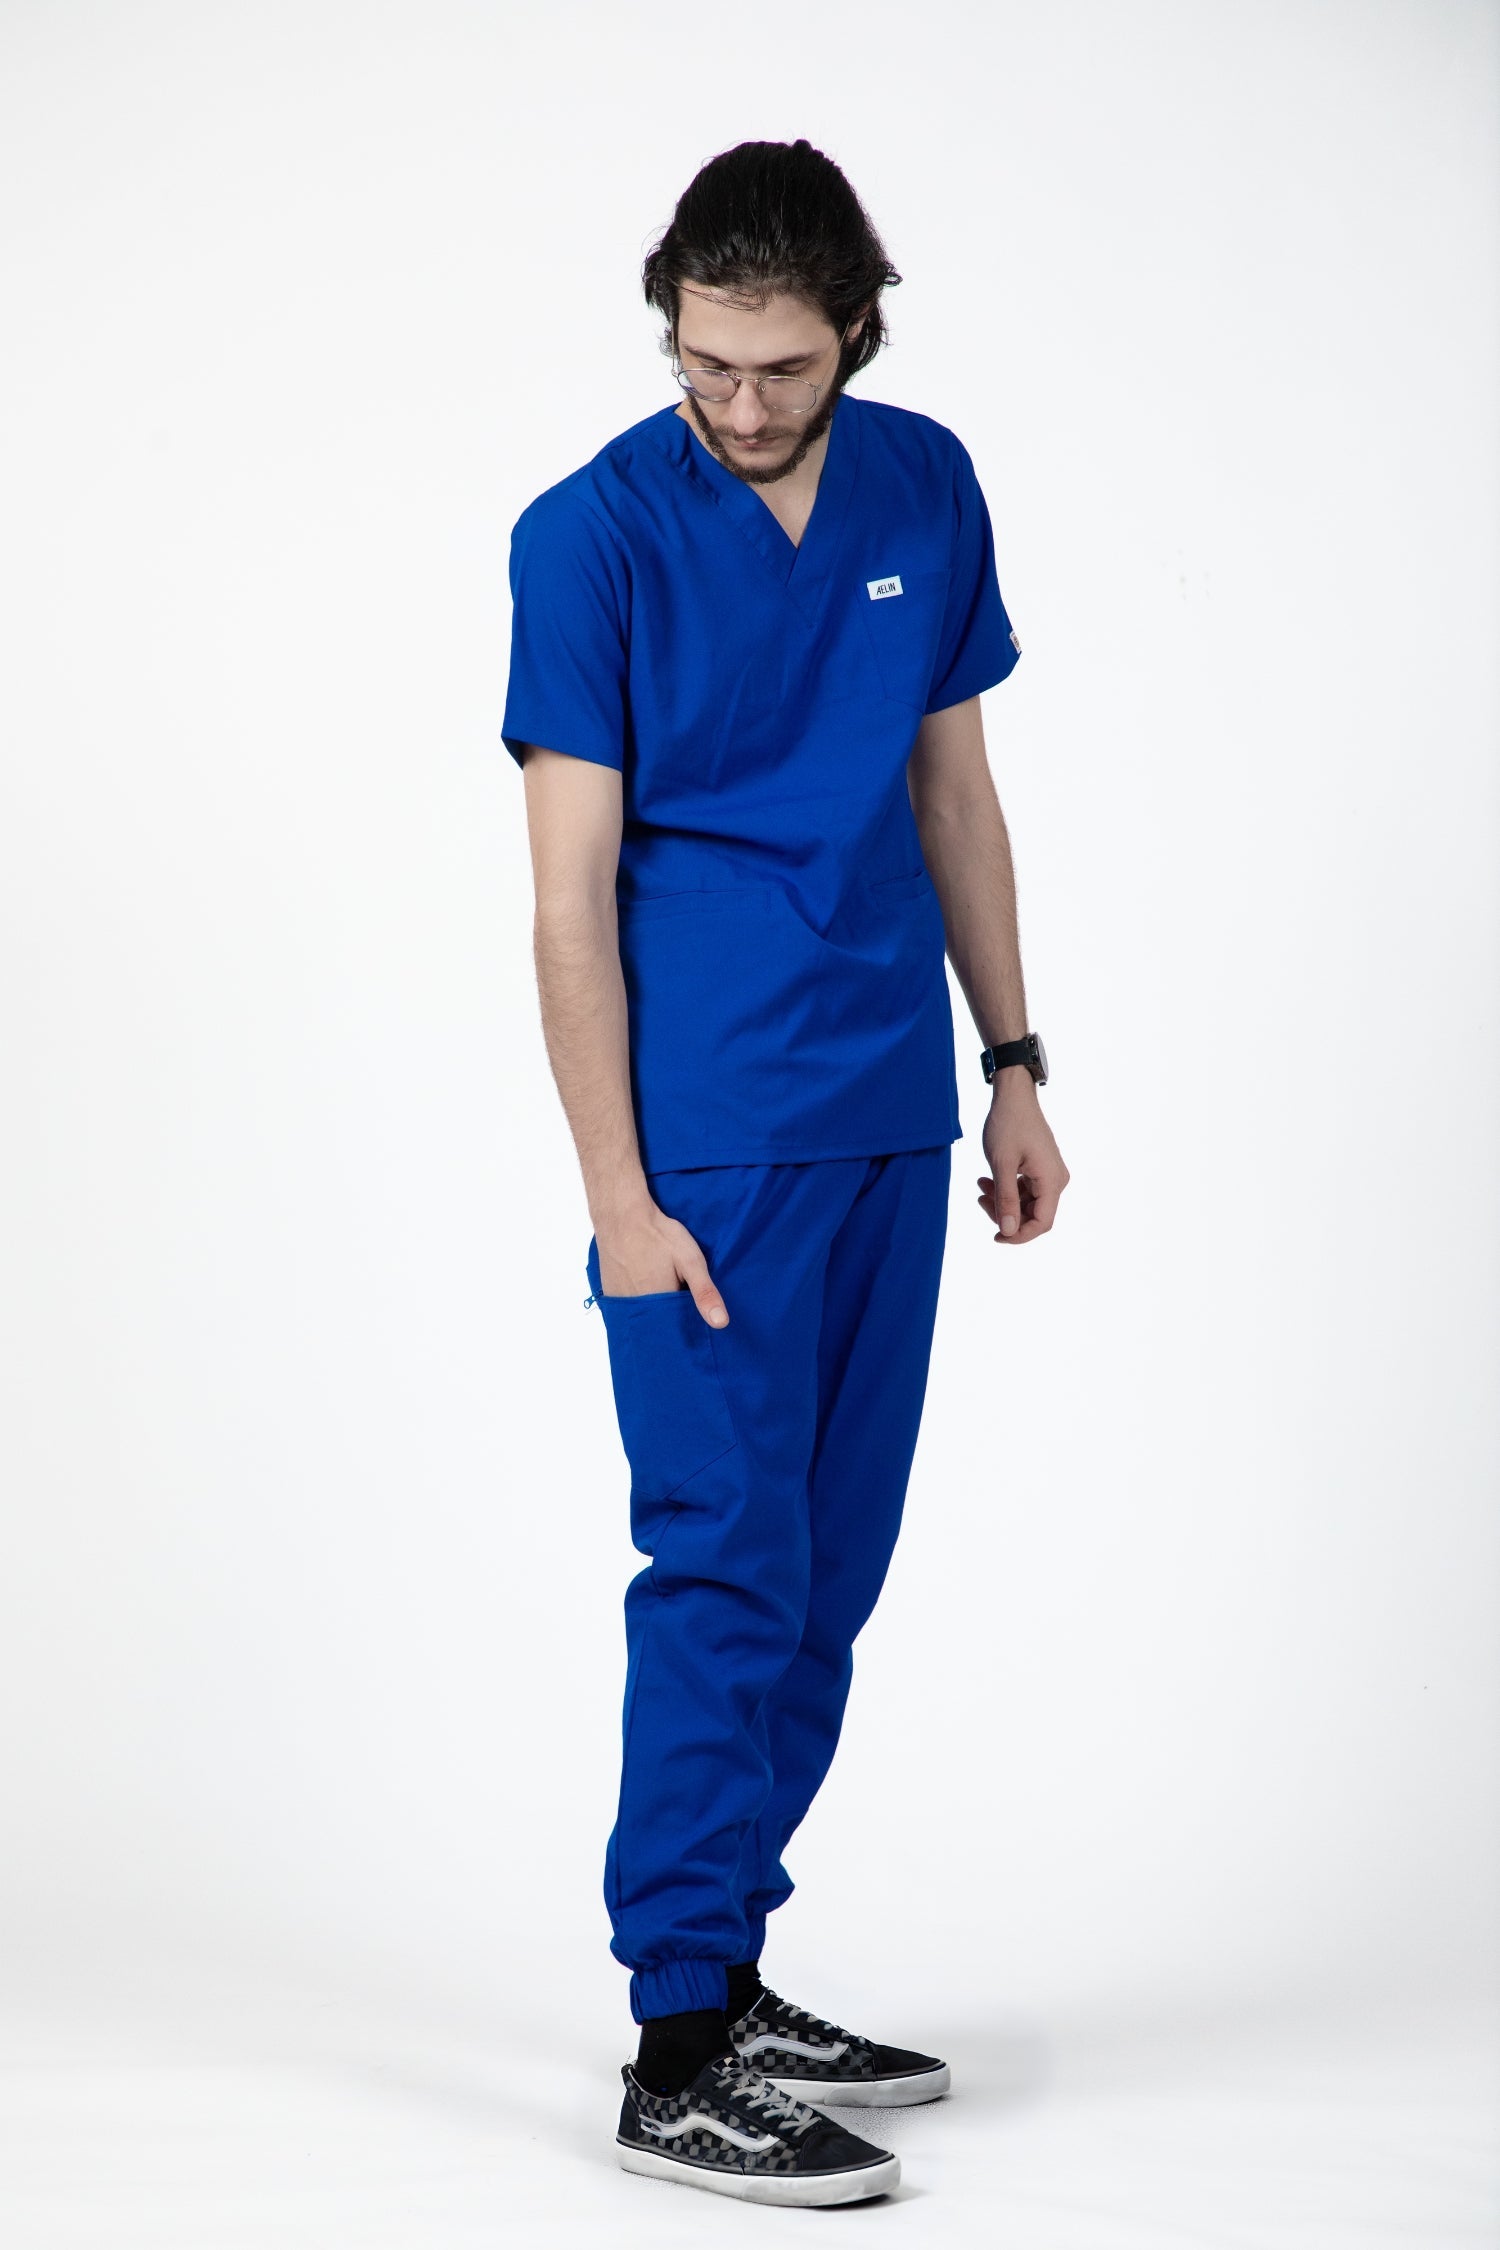 Homme portant un pantalon médical bleu royal slimfit, tenues médicales modernes et élégantes